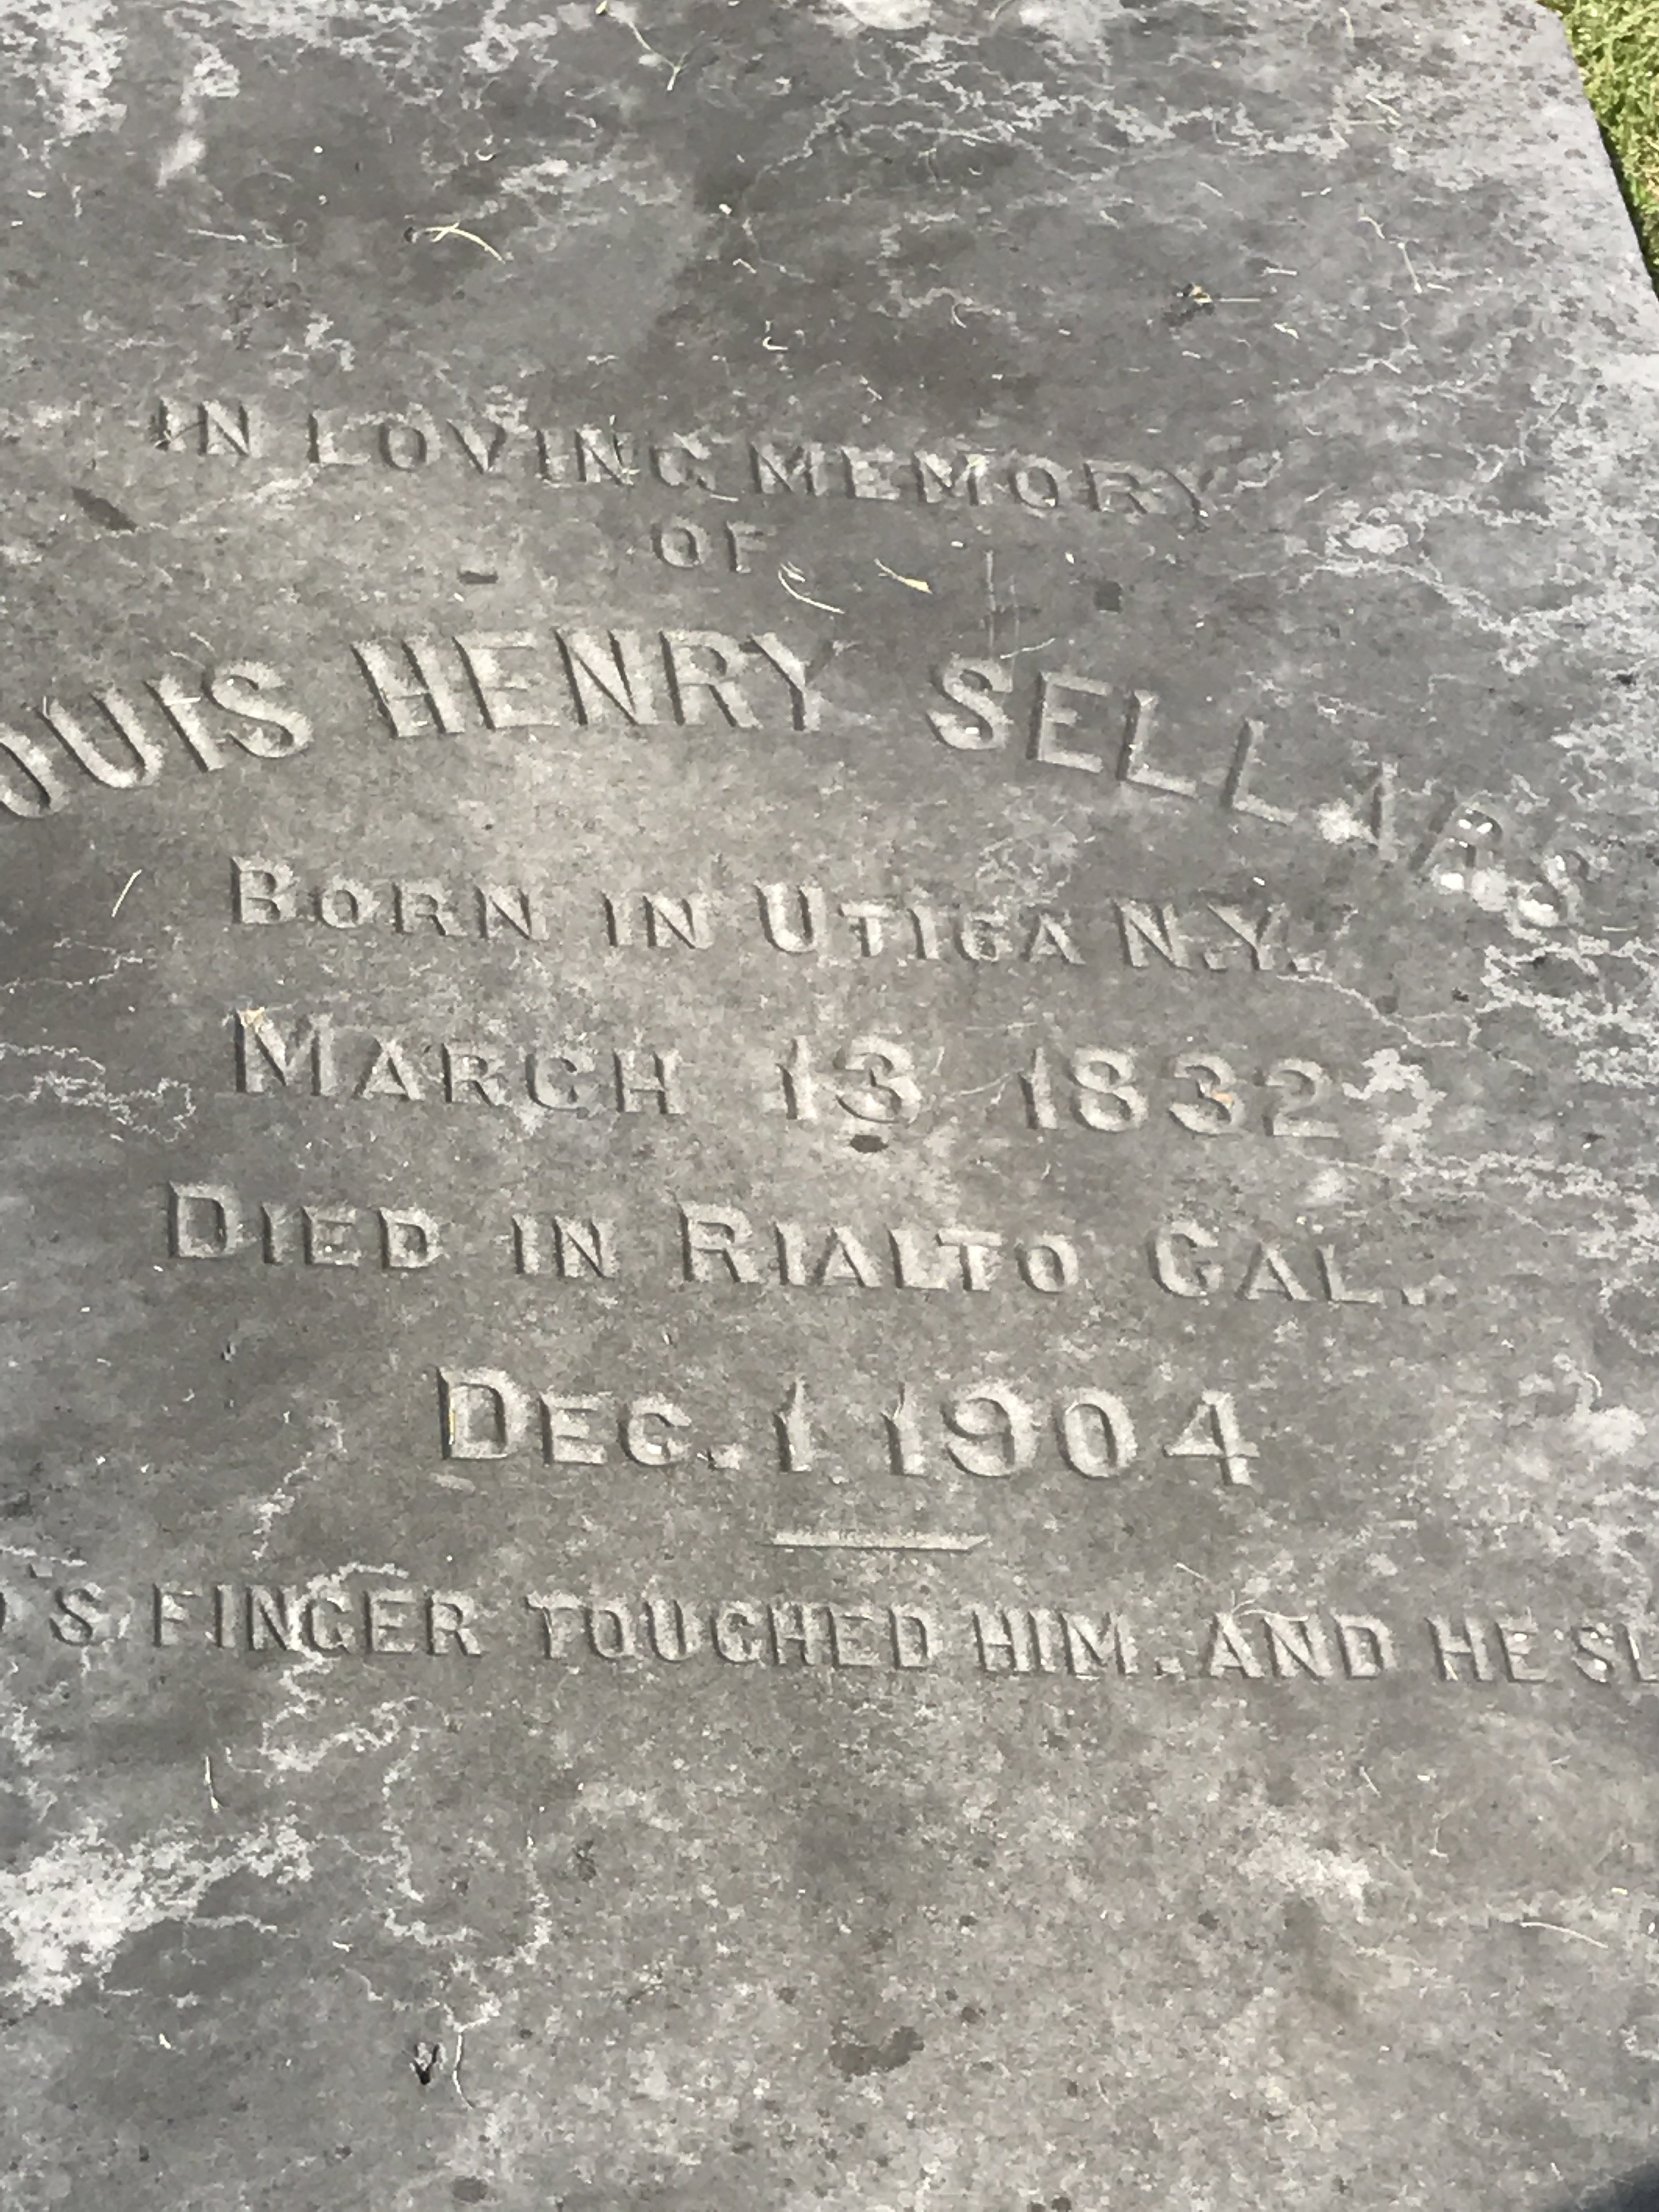 Louis Henry Sellers